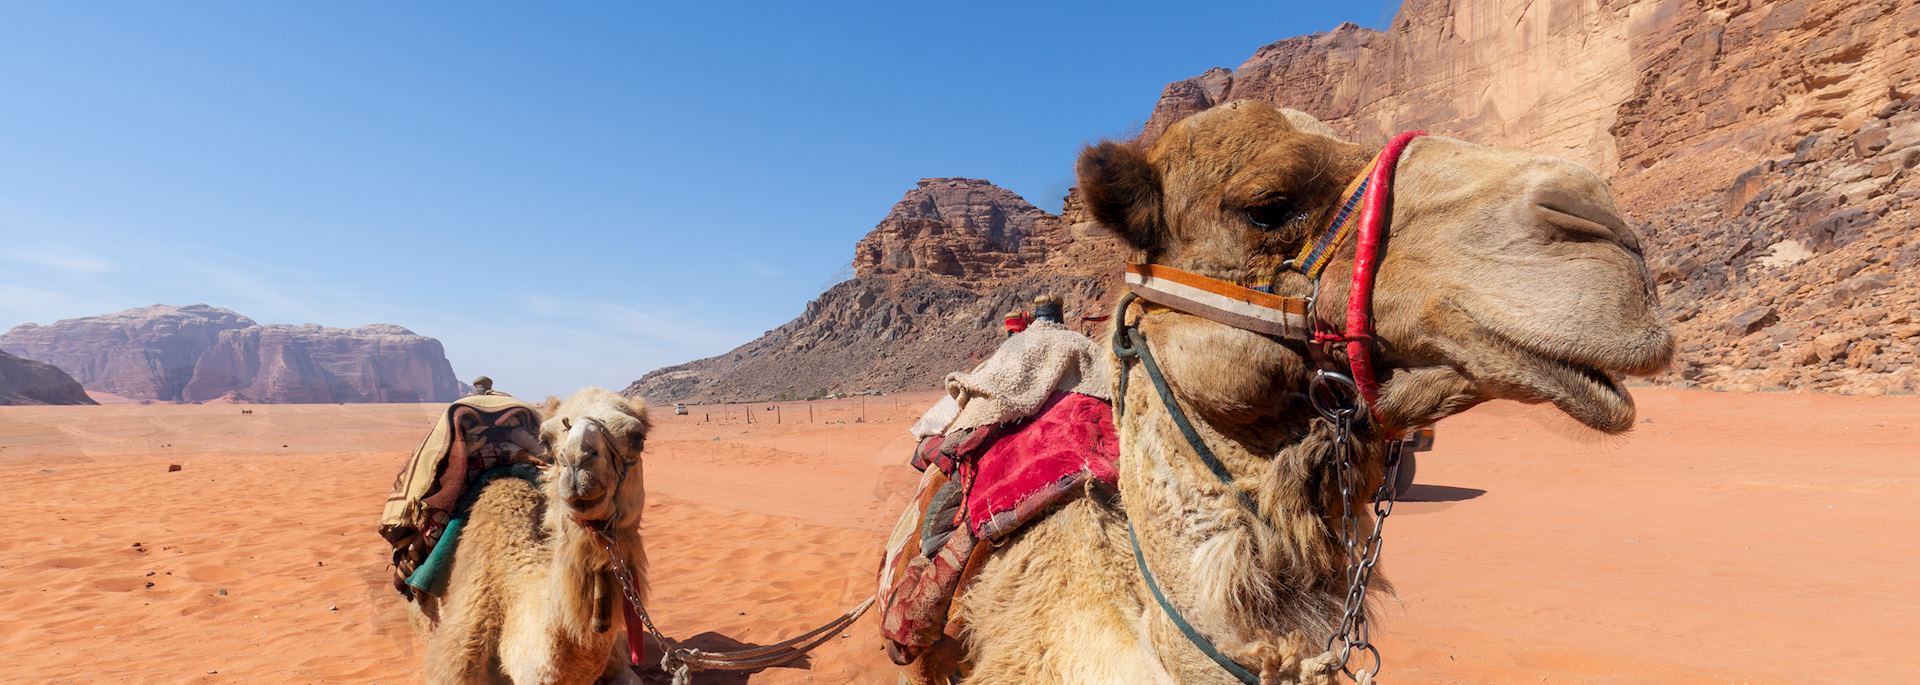 Desert transportation in Jordan